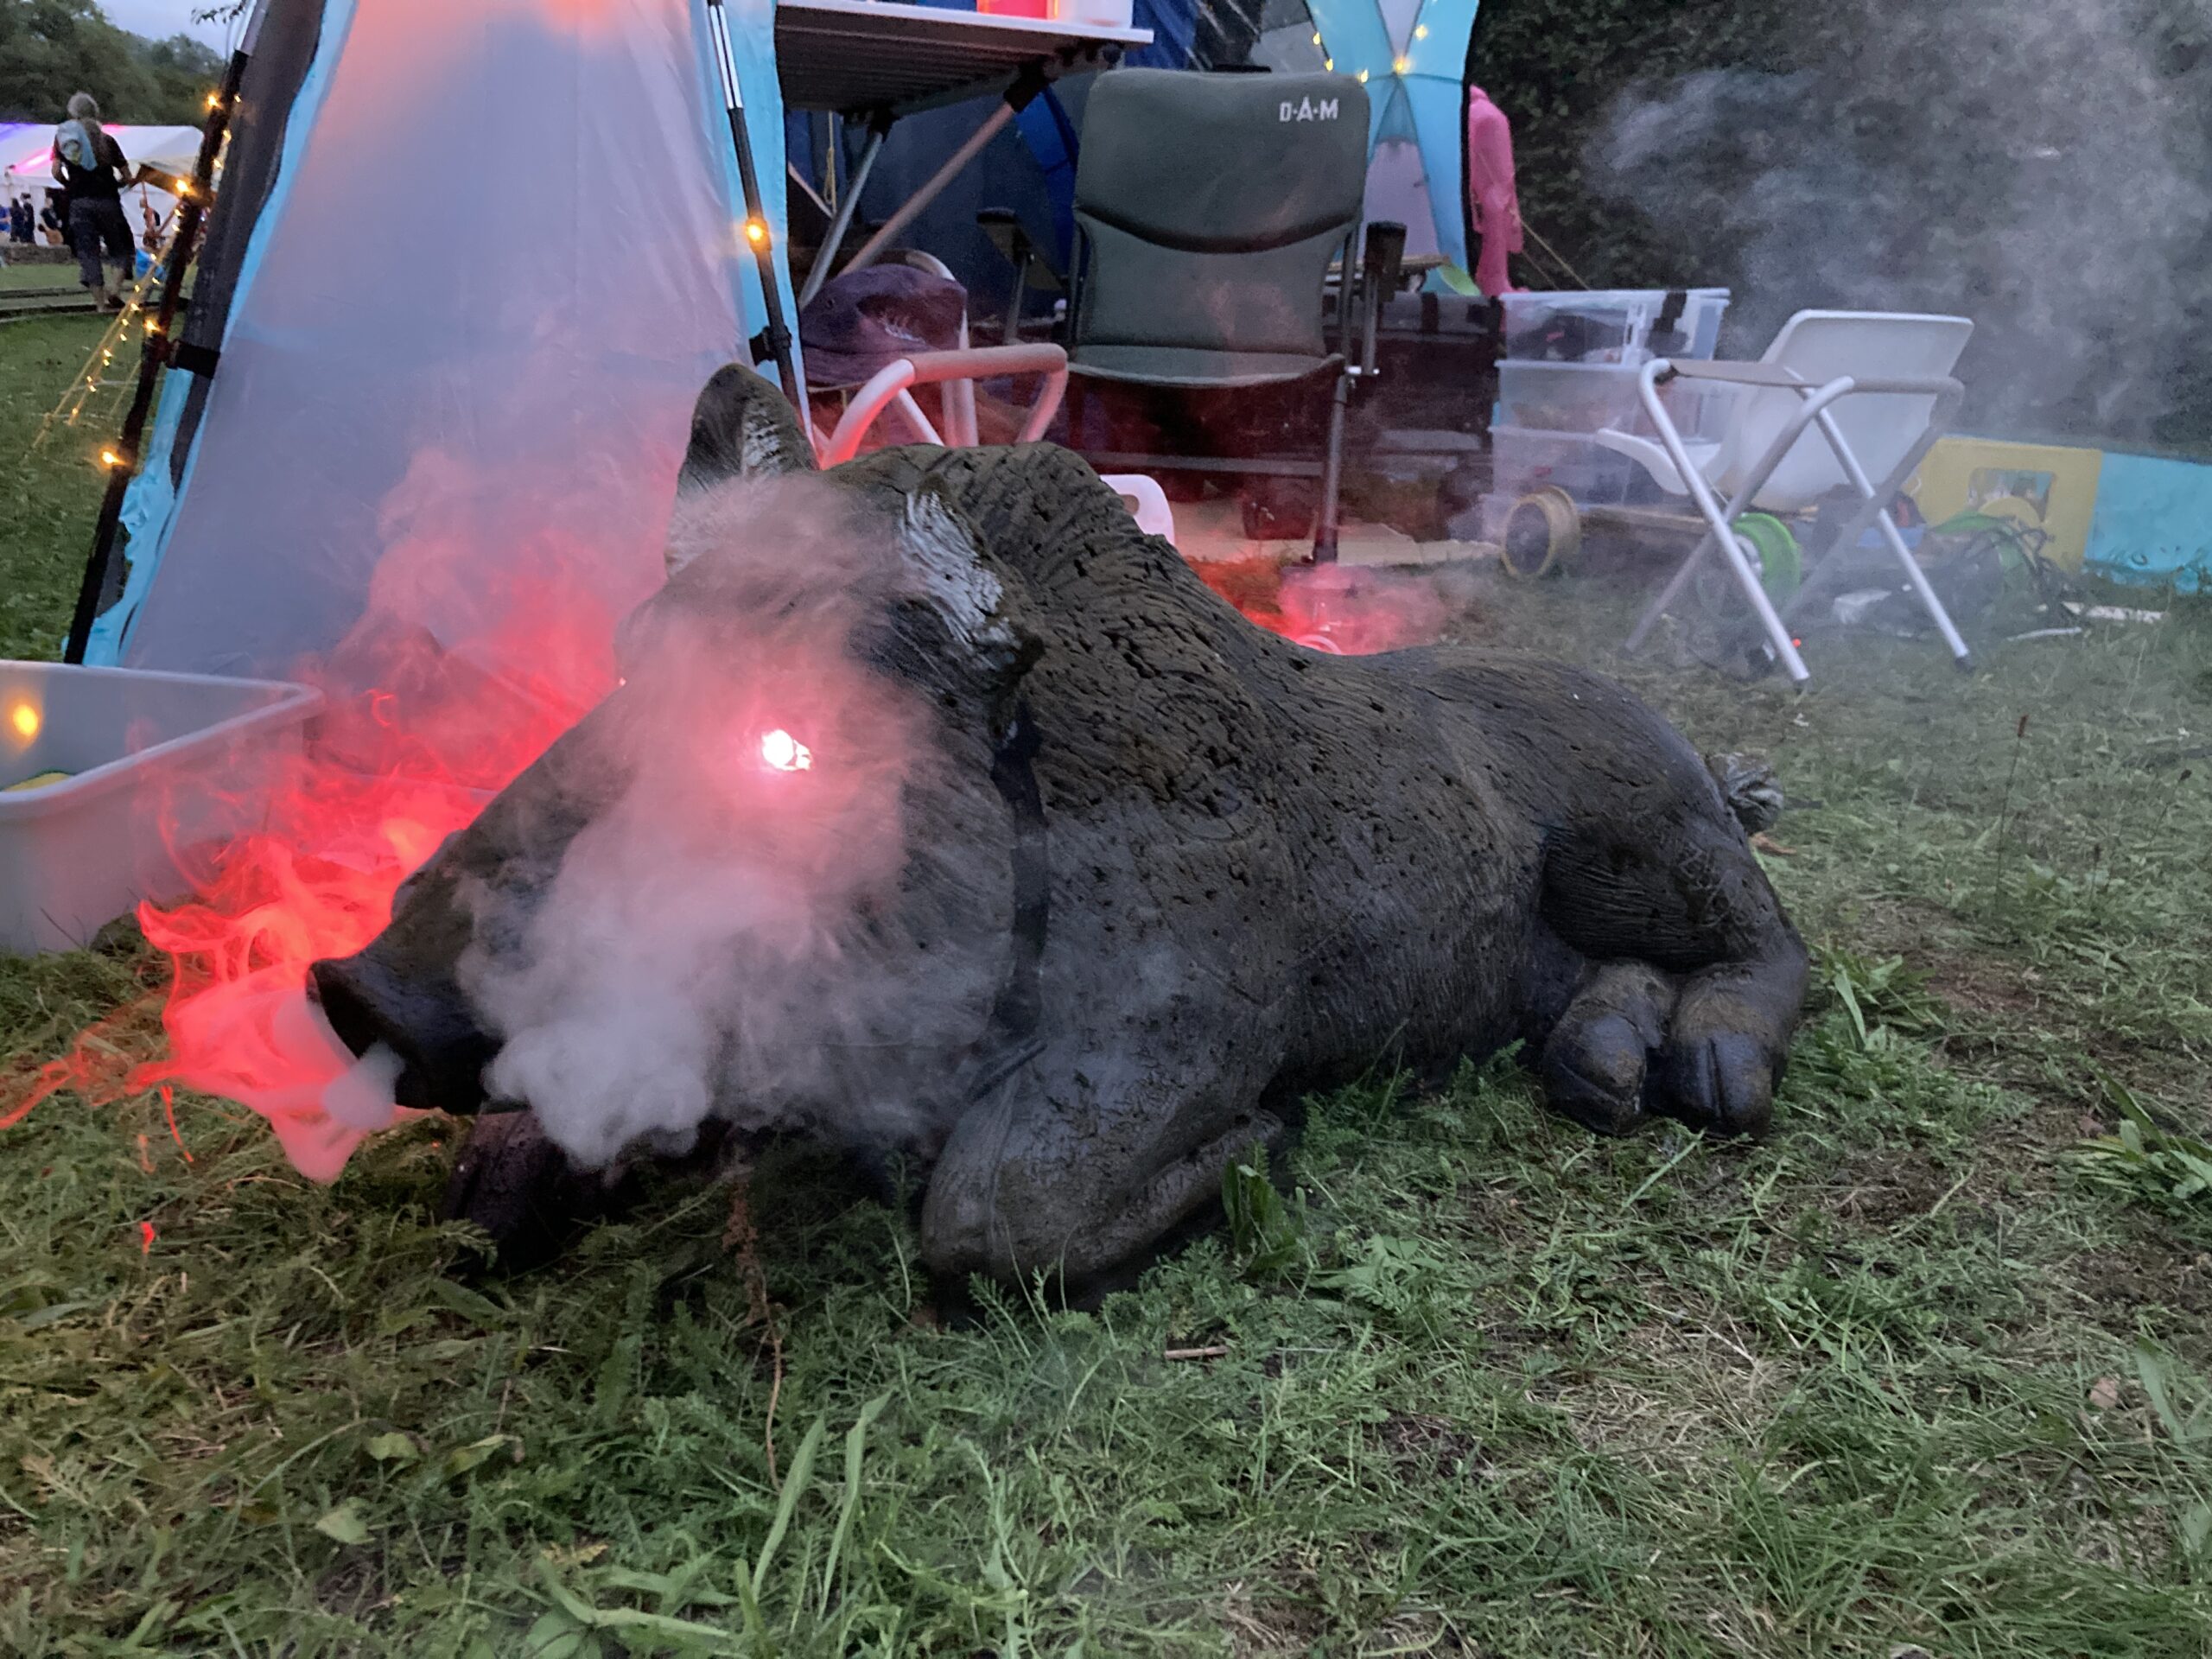 Zu sehen ist eine sehr lebensähnliche Skulptur eines Wilschweins, das vor einem offenen Zelt liegt. Das Schwein dampft aus der Nase und die Augen sind magentarot erleuchtet.